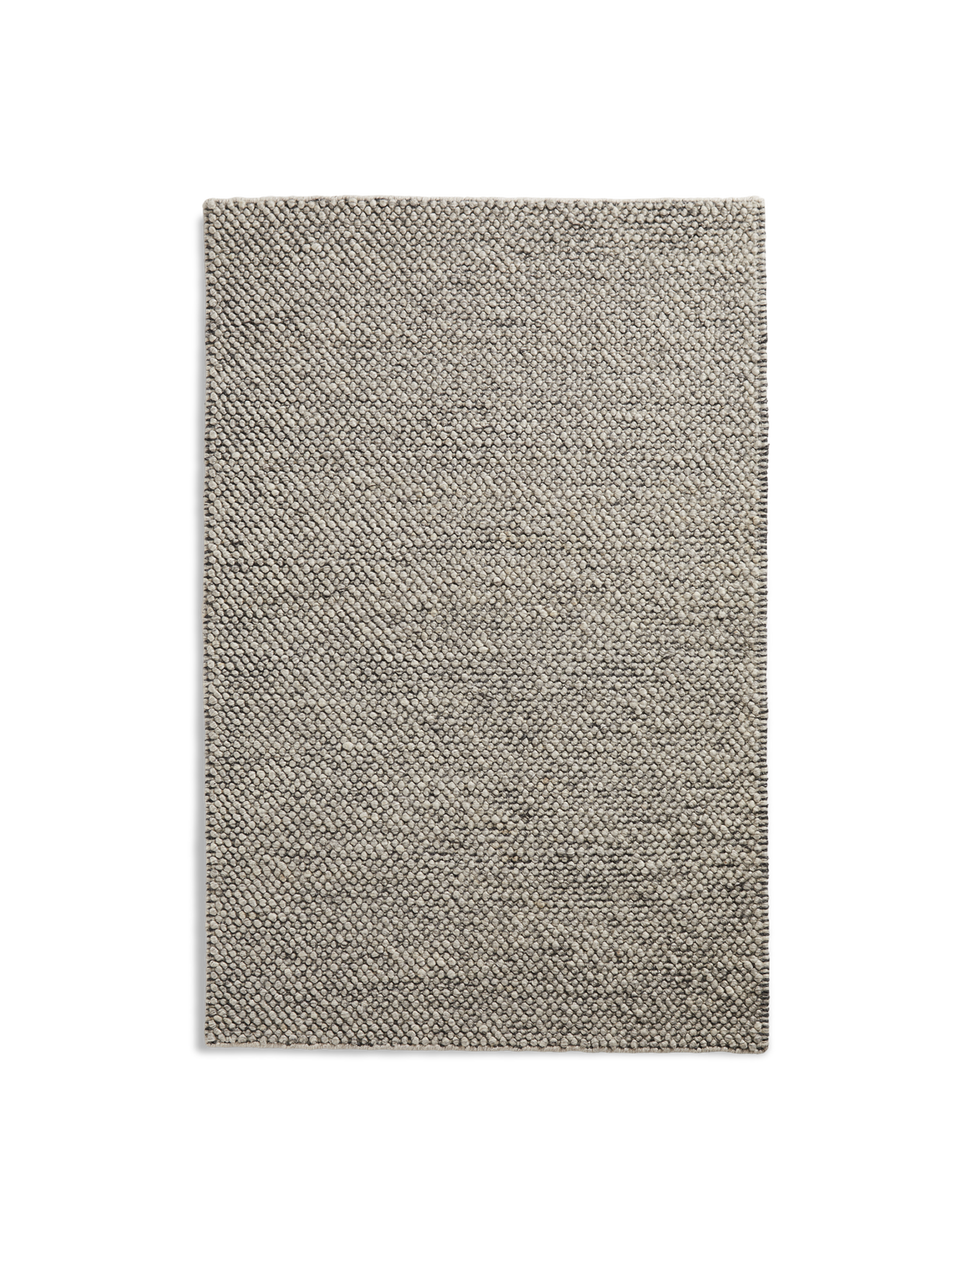 tact rug 5.6' x 7.9' dark grey